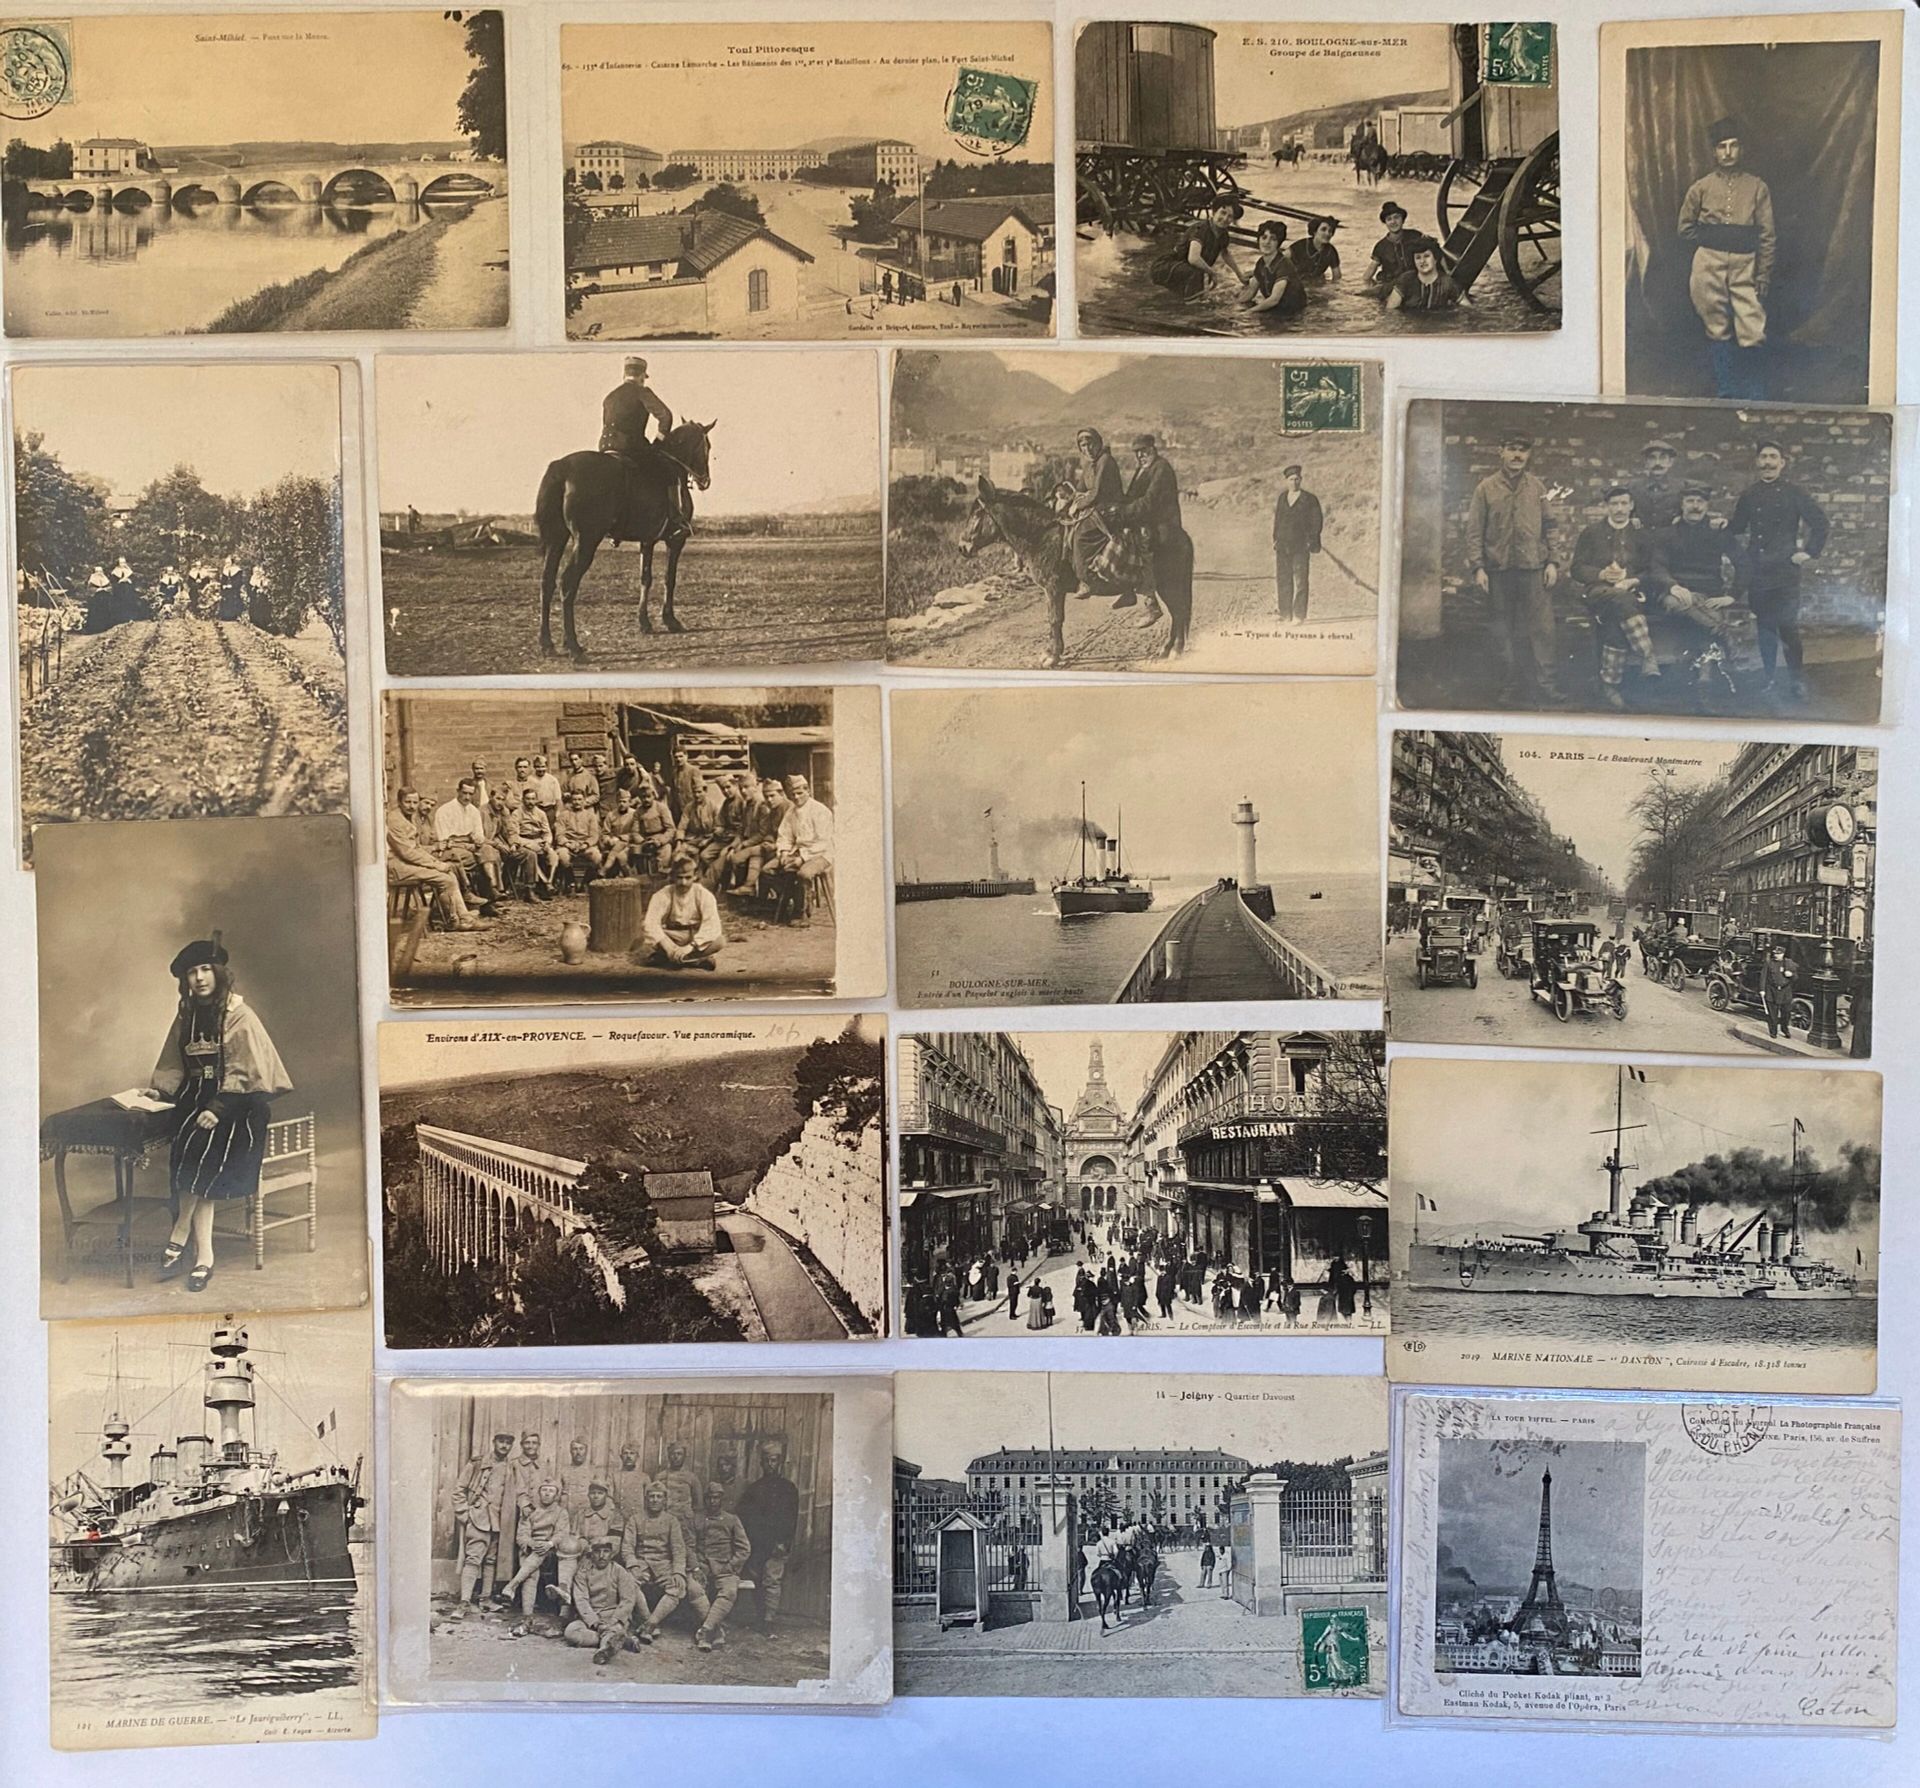 Null 明信片 
一套约 30 种不同明信片：滨海布洛涅、骑马农民、普罗旺斯地区艾克斯、巴黎、士兵、团体、骑兵、法国海军、圣米耶尔、约瓦尼、法国海军、风景如画&hellip;